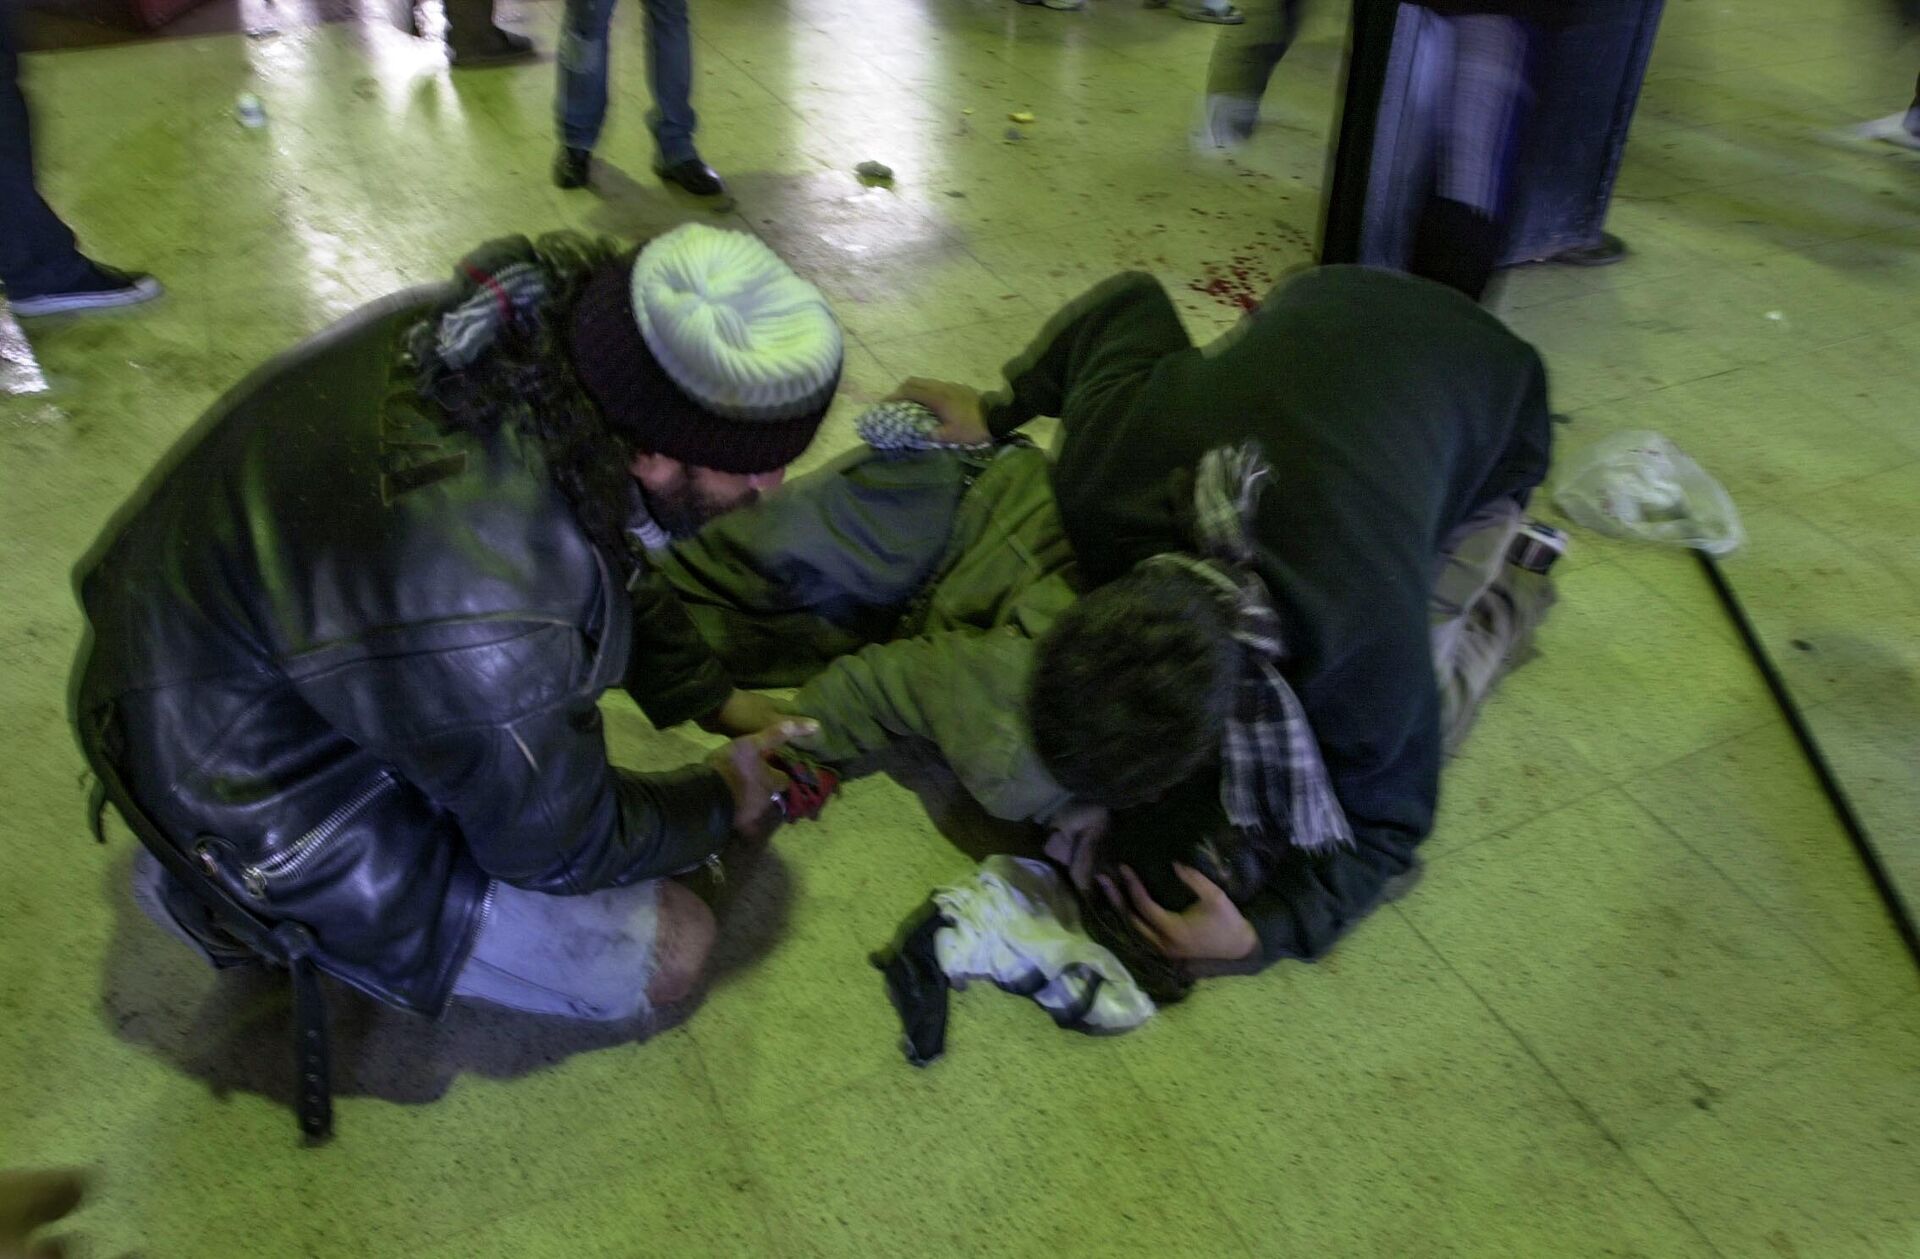 Darío Santillán (gorro blanco), ayudando junto a otro manifestante a Maximiliano Kosteki herido en el suelo de la Estación Avellaneda. Provincia de Buenos Aires. 26/06/2002 - Sputnik Mundo, 1920, 24.06.2022